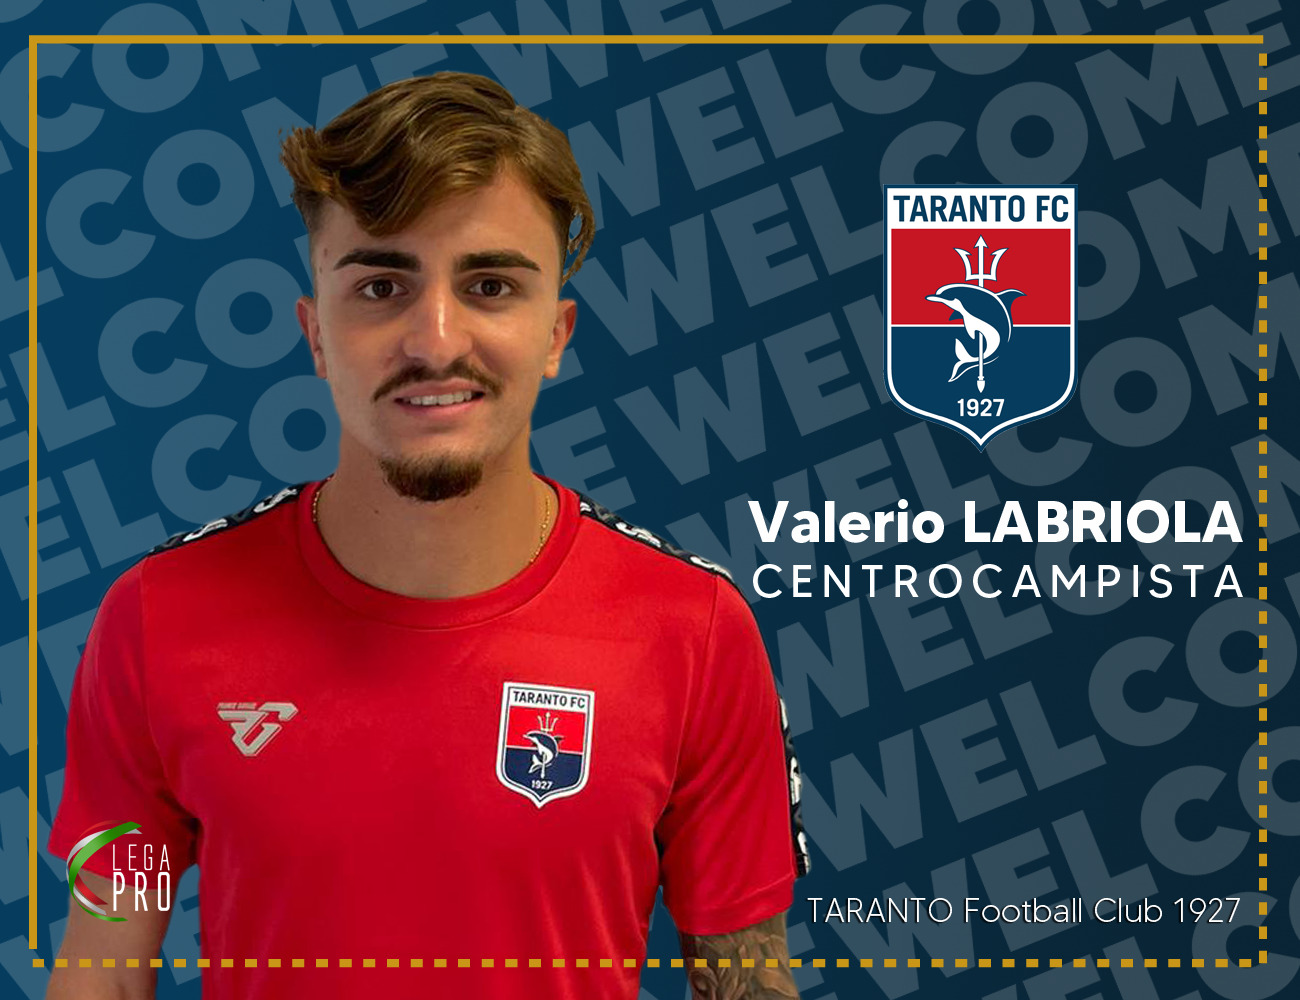 Valerio Labriola è un calciatore rossoblù